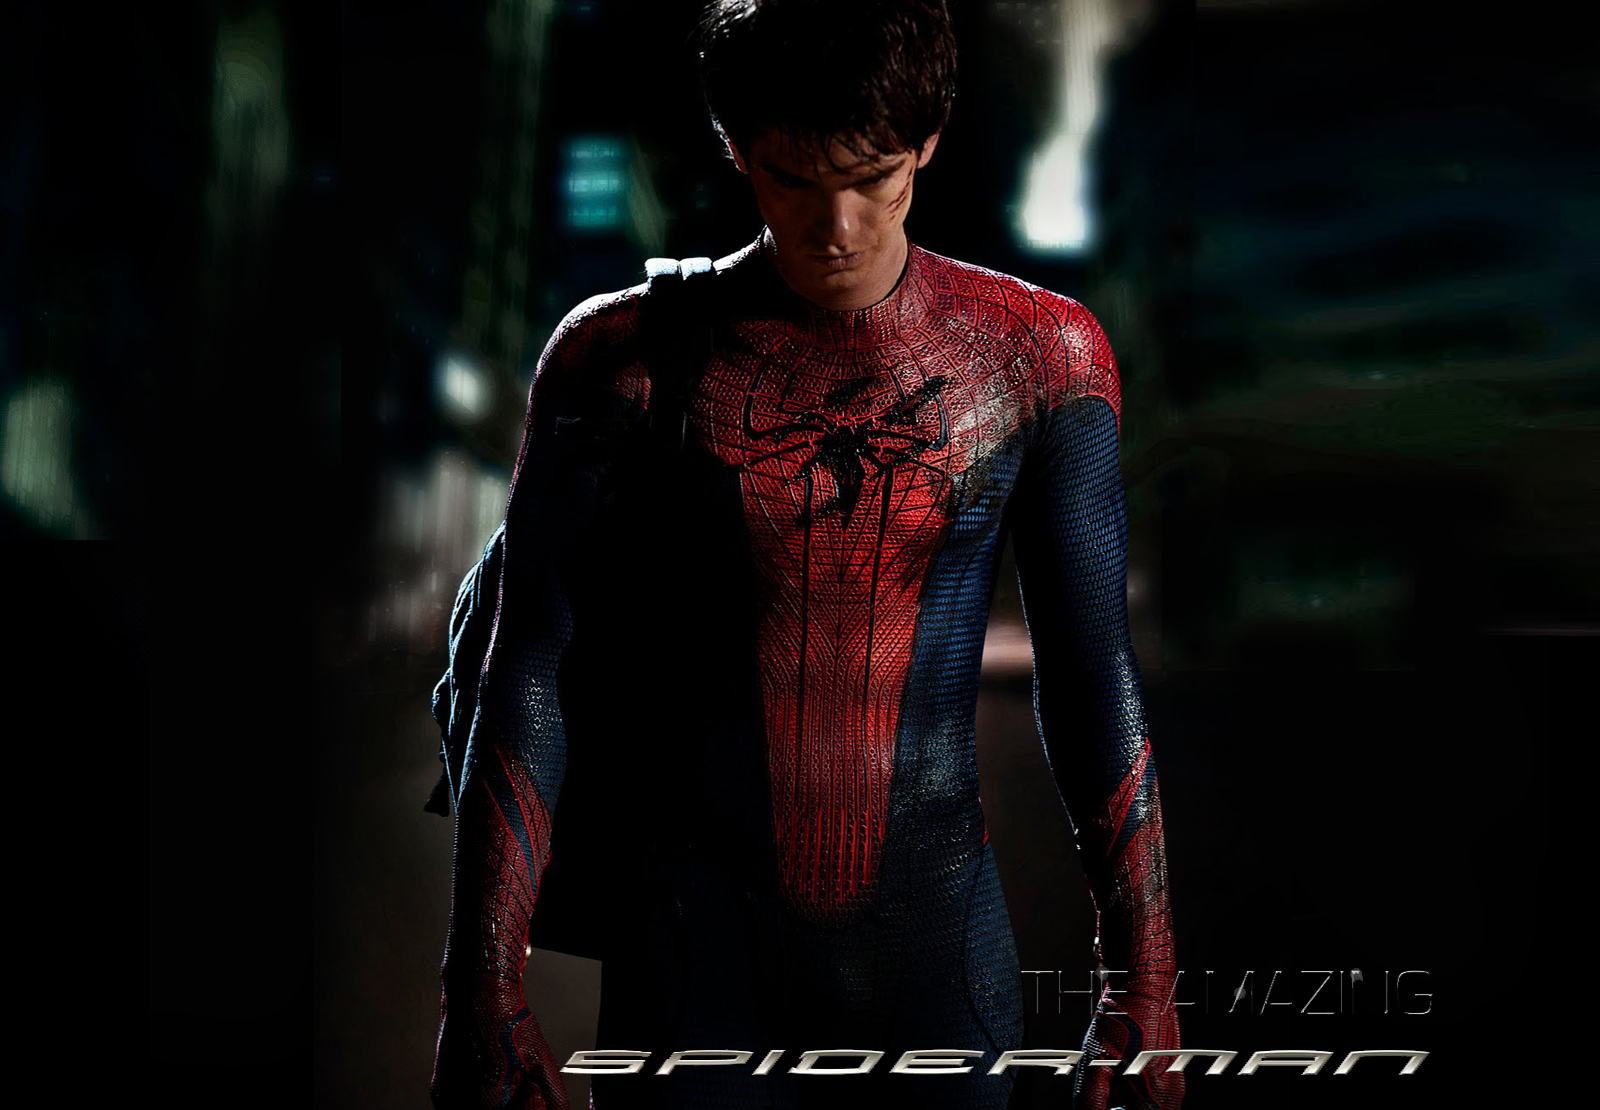 El Crítico: The Amazing Spider-Man (2012)